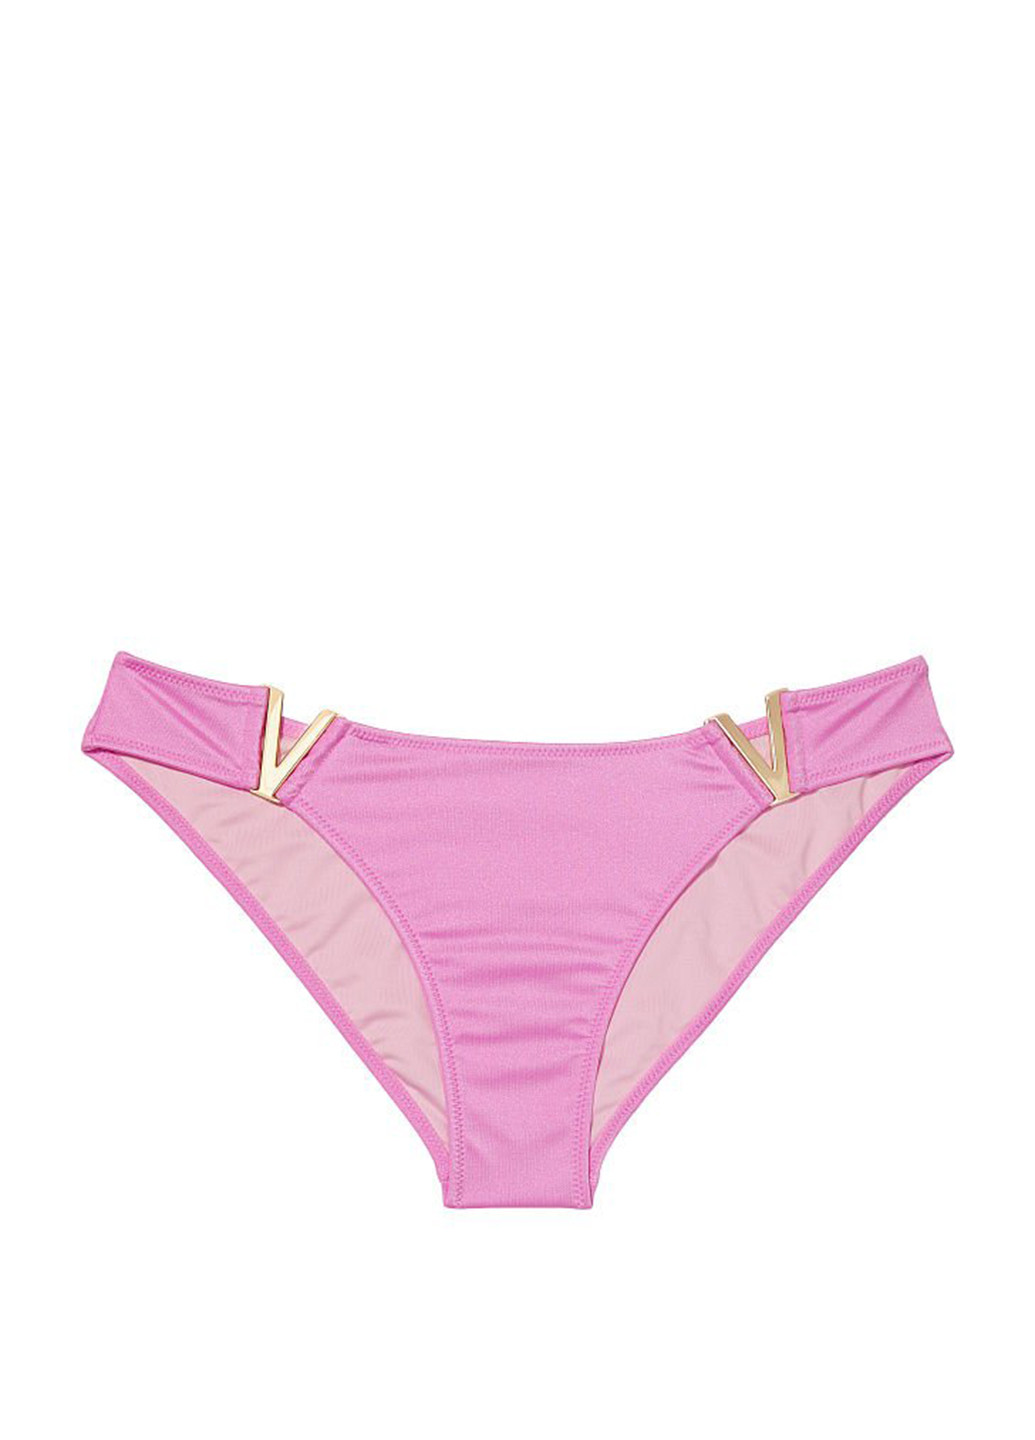 Рожевий літній купальник (ліф, трусики) бікіні, роздільний Victoria's Secret